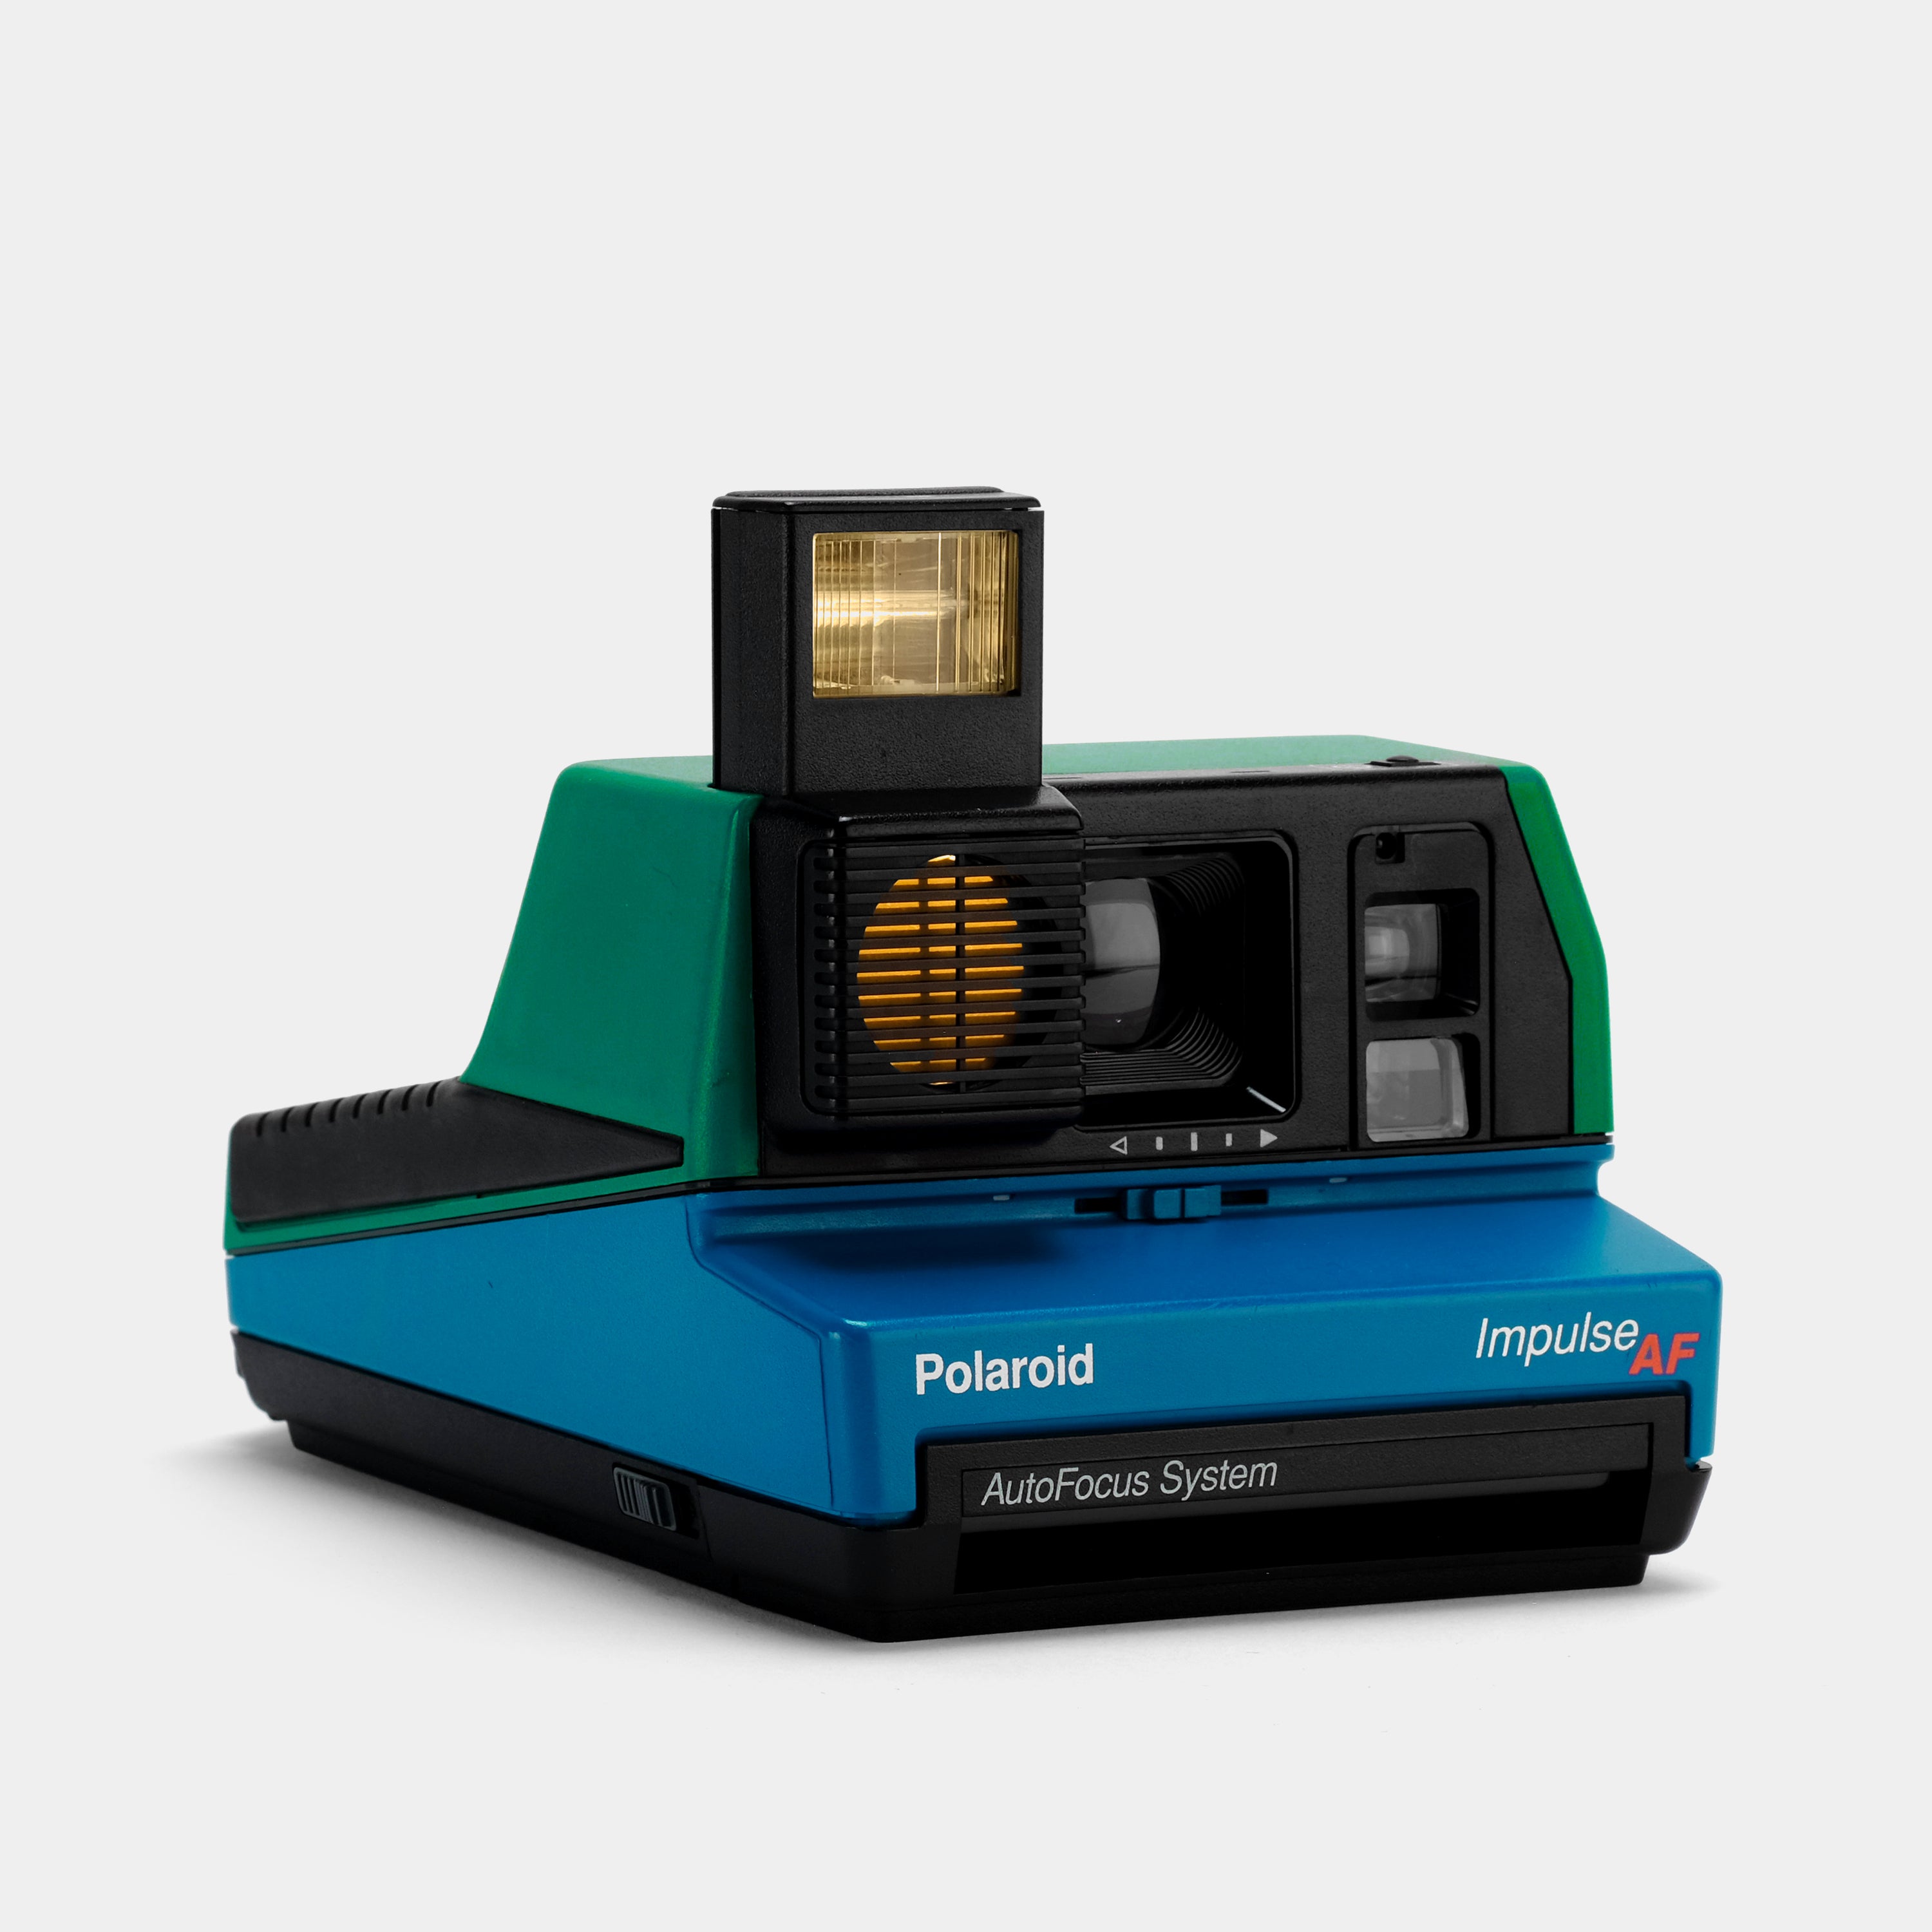 Polaroid 600 Impulse Autofocus Jade Green & Lapis Blue Instant Film Camera